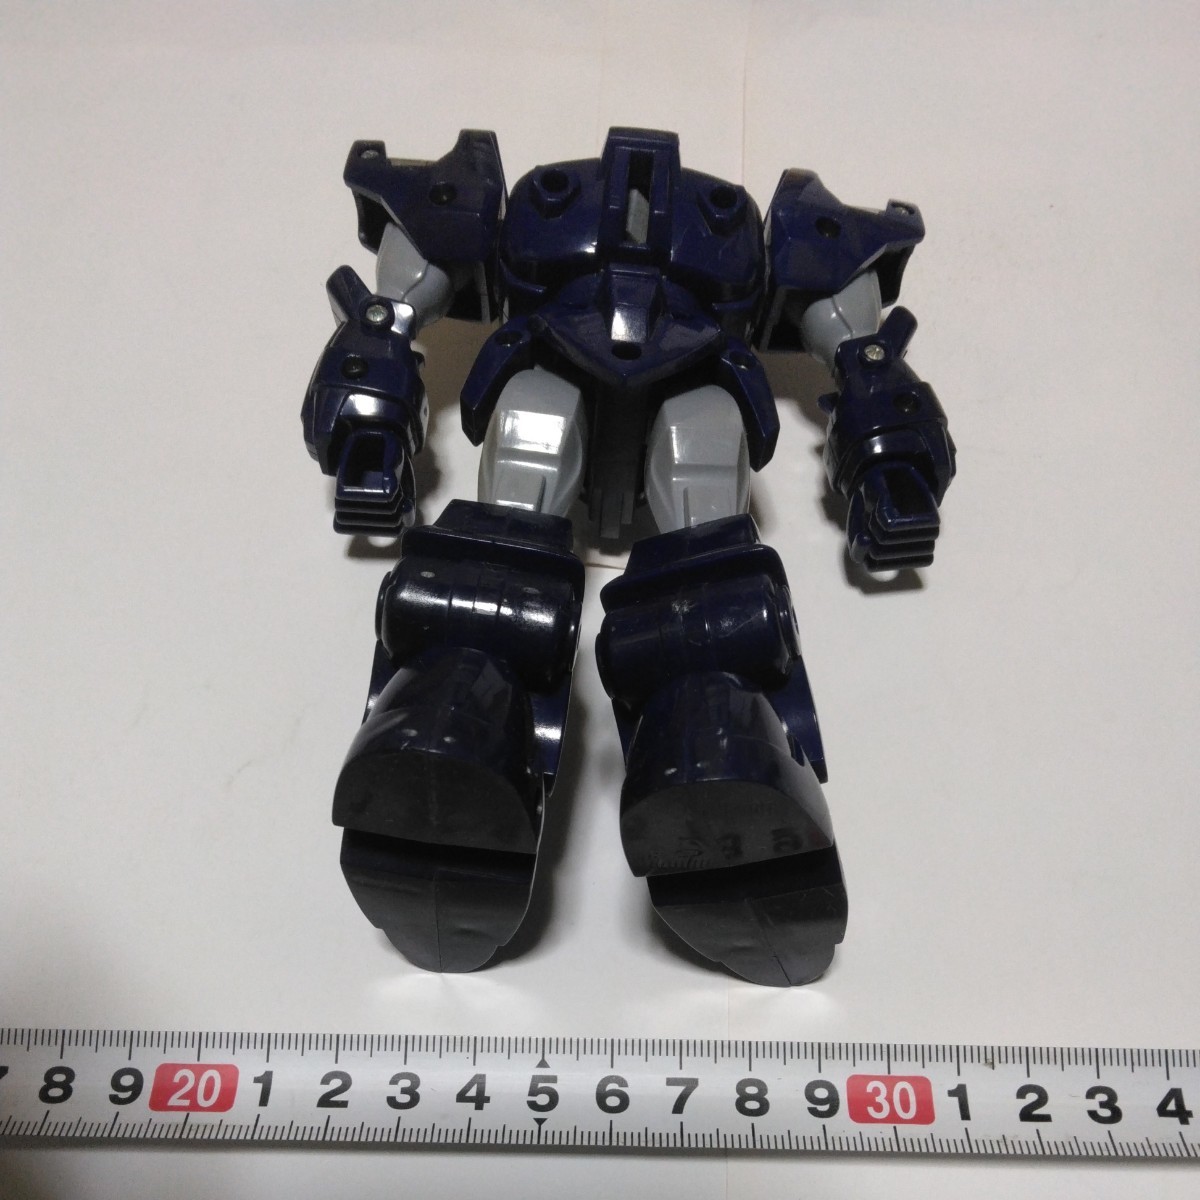 鉄人28号FX 横山光輝作品 メーカータカラ当時品 保管品 昭和レトロ ロボット玩具の画像3